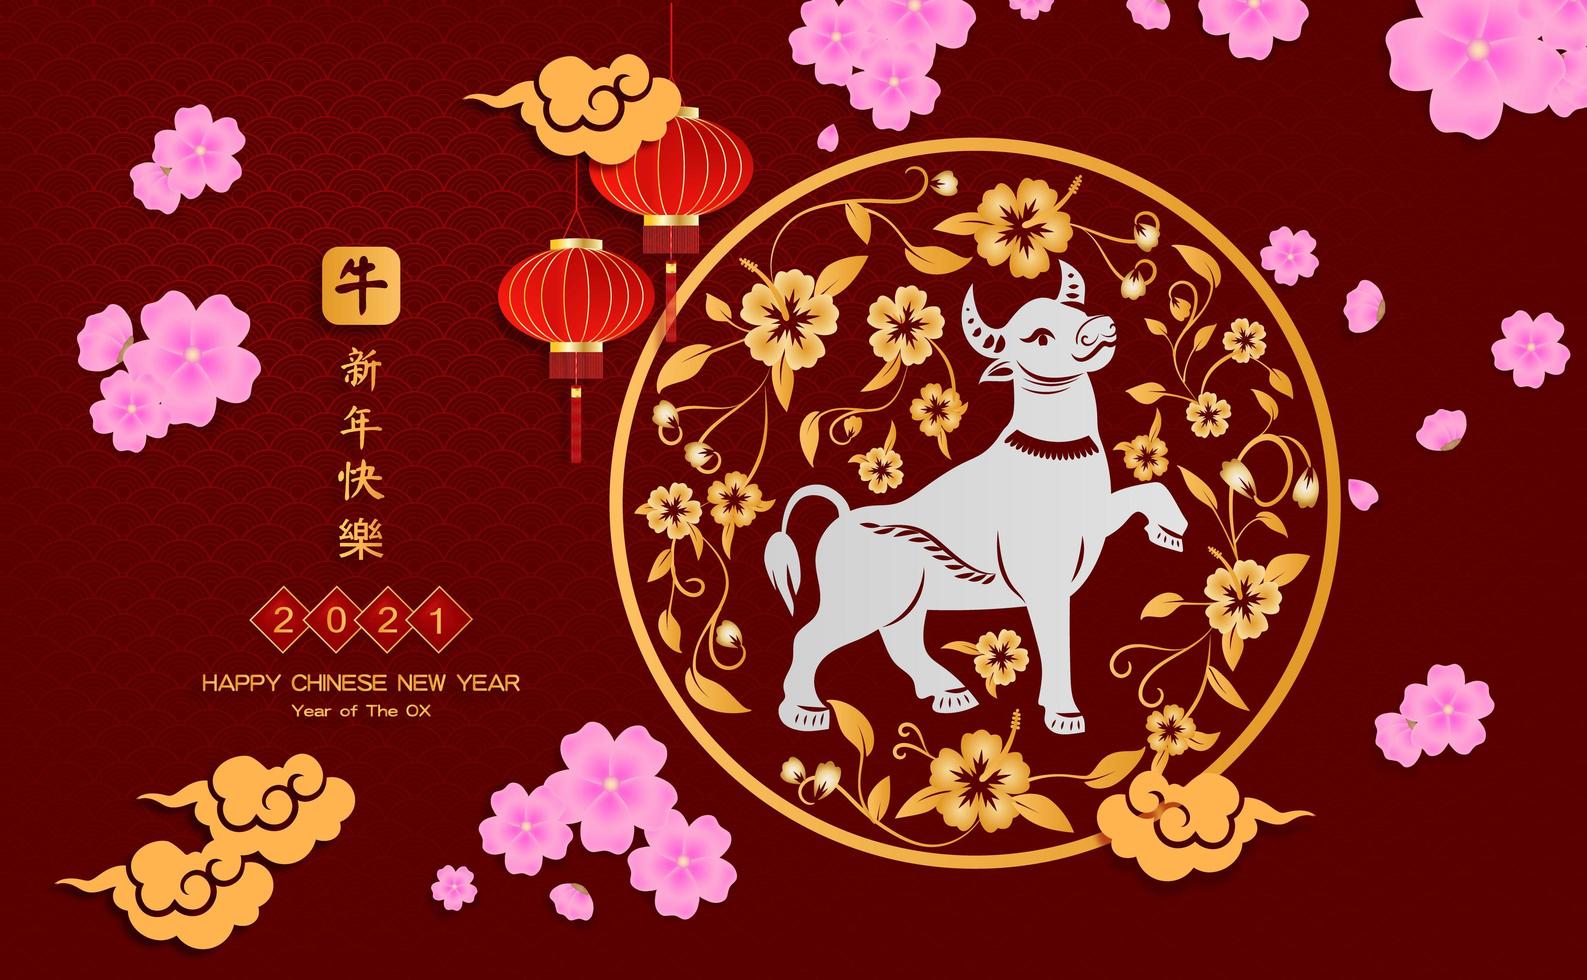 año nuevo chino 2021 año del buey, carácter de buey cortado en papel rojo, flores y elementos asiáticos con estilo artesanal en el fondo. vector